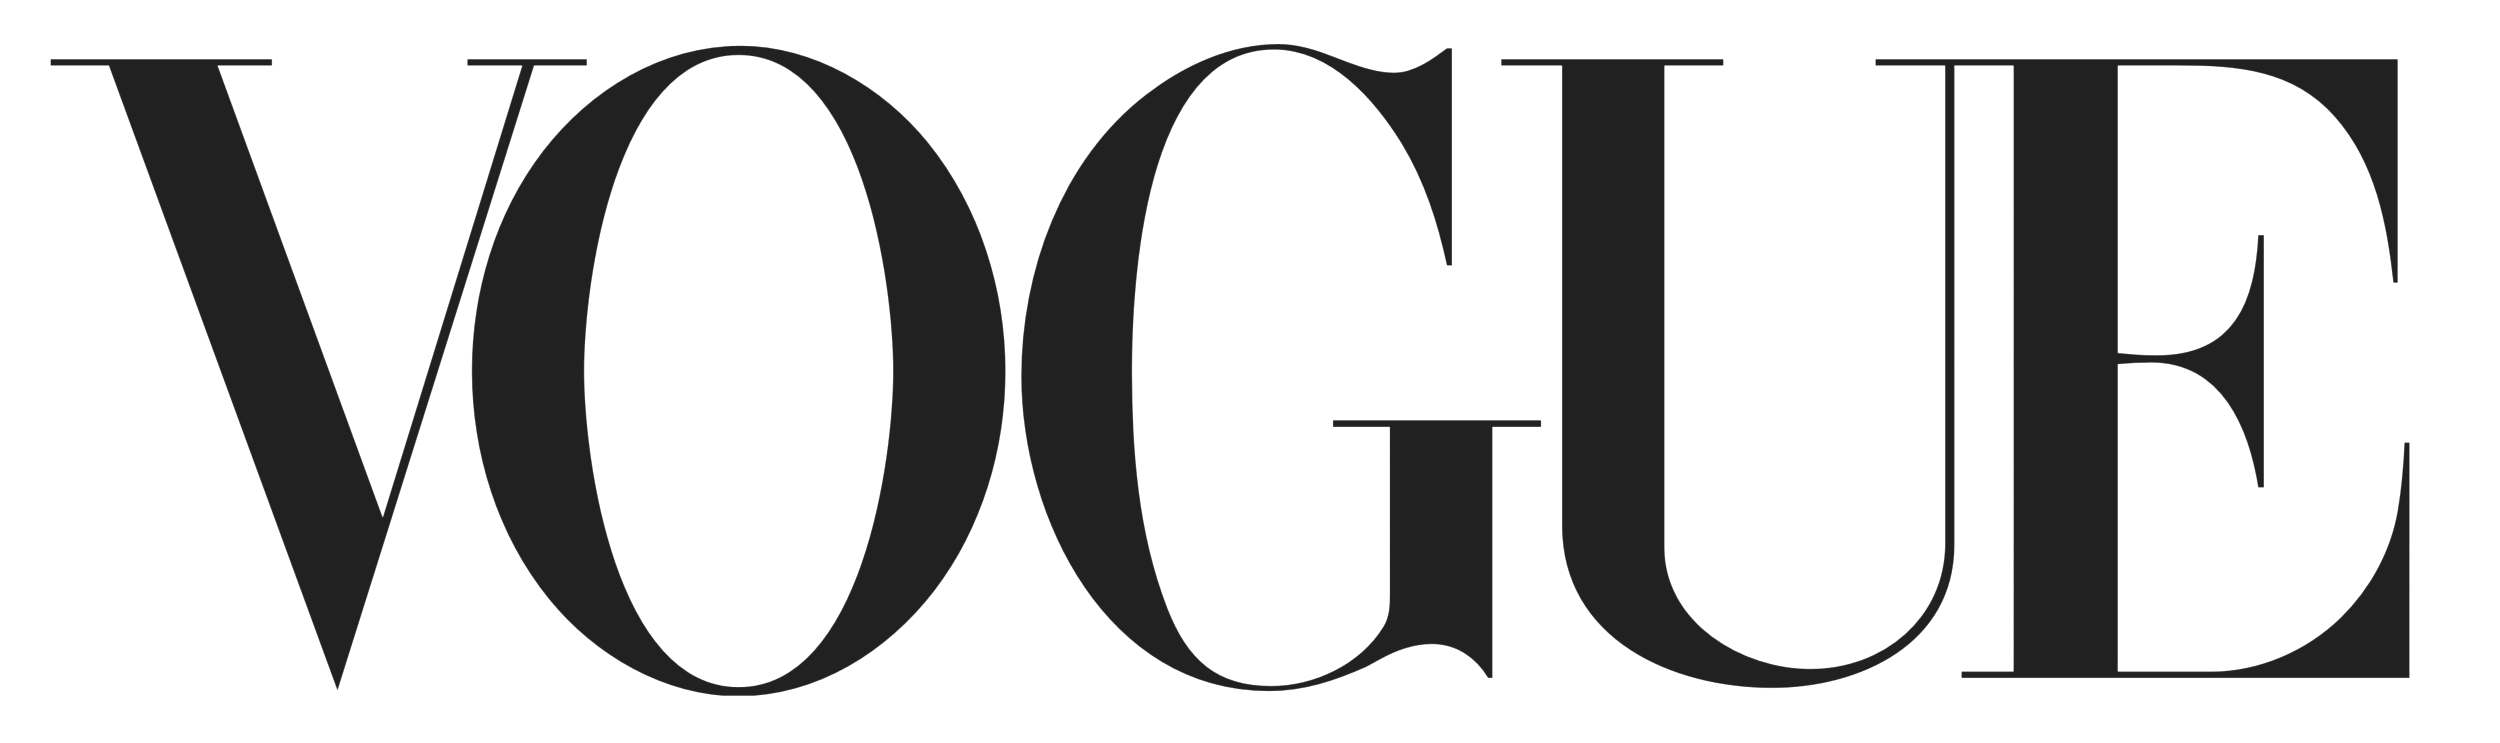 Vogue_logo.png